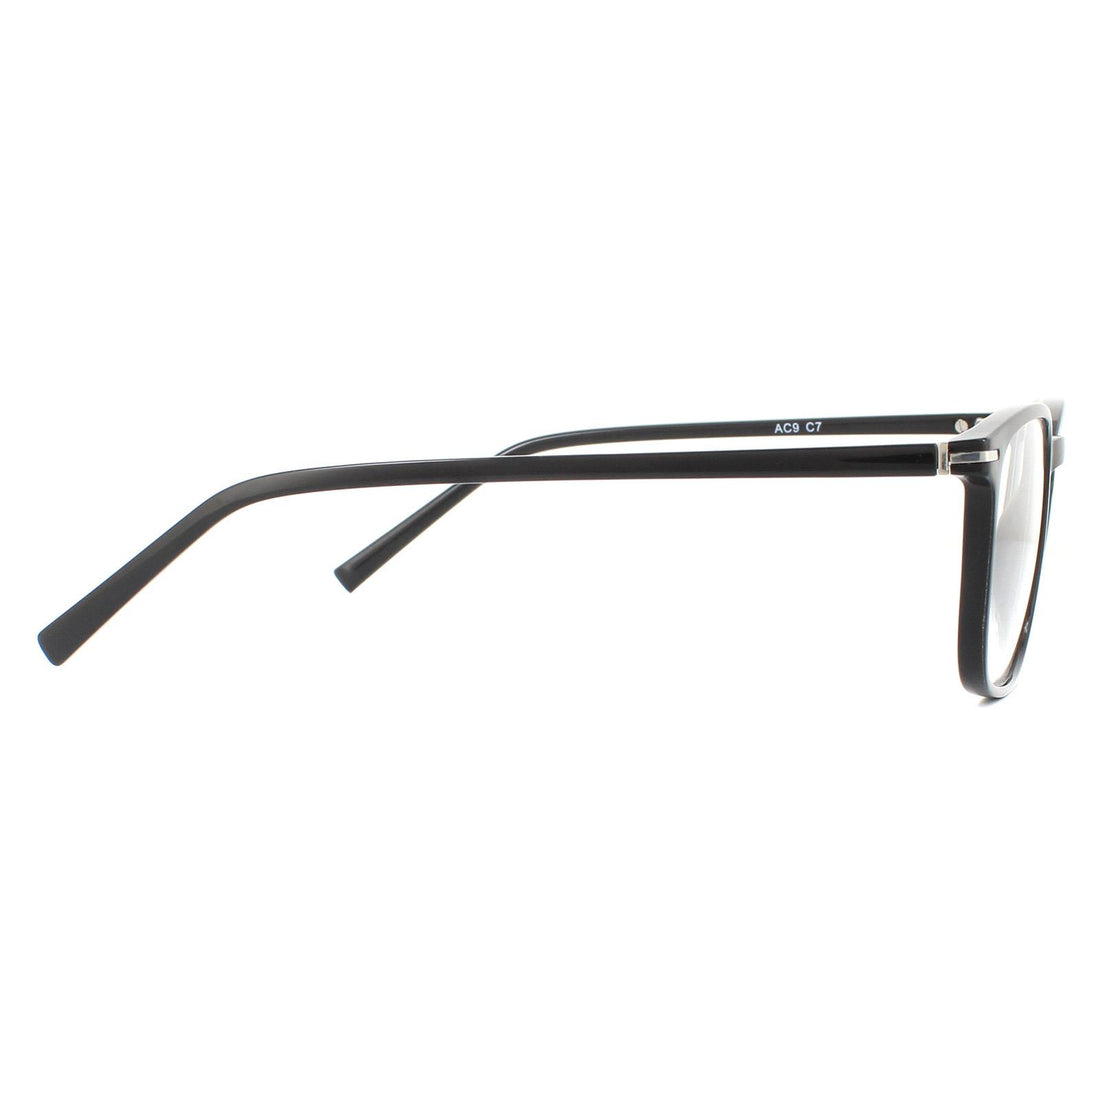 SunOptic AC9 Glasses Frames